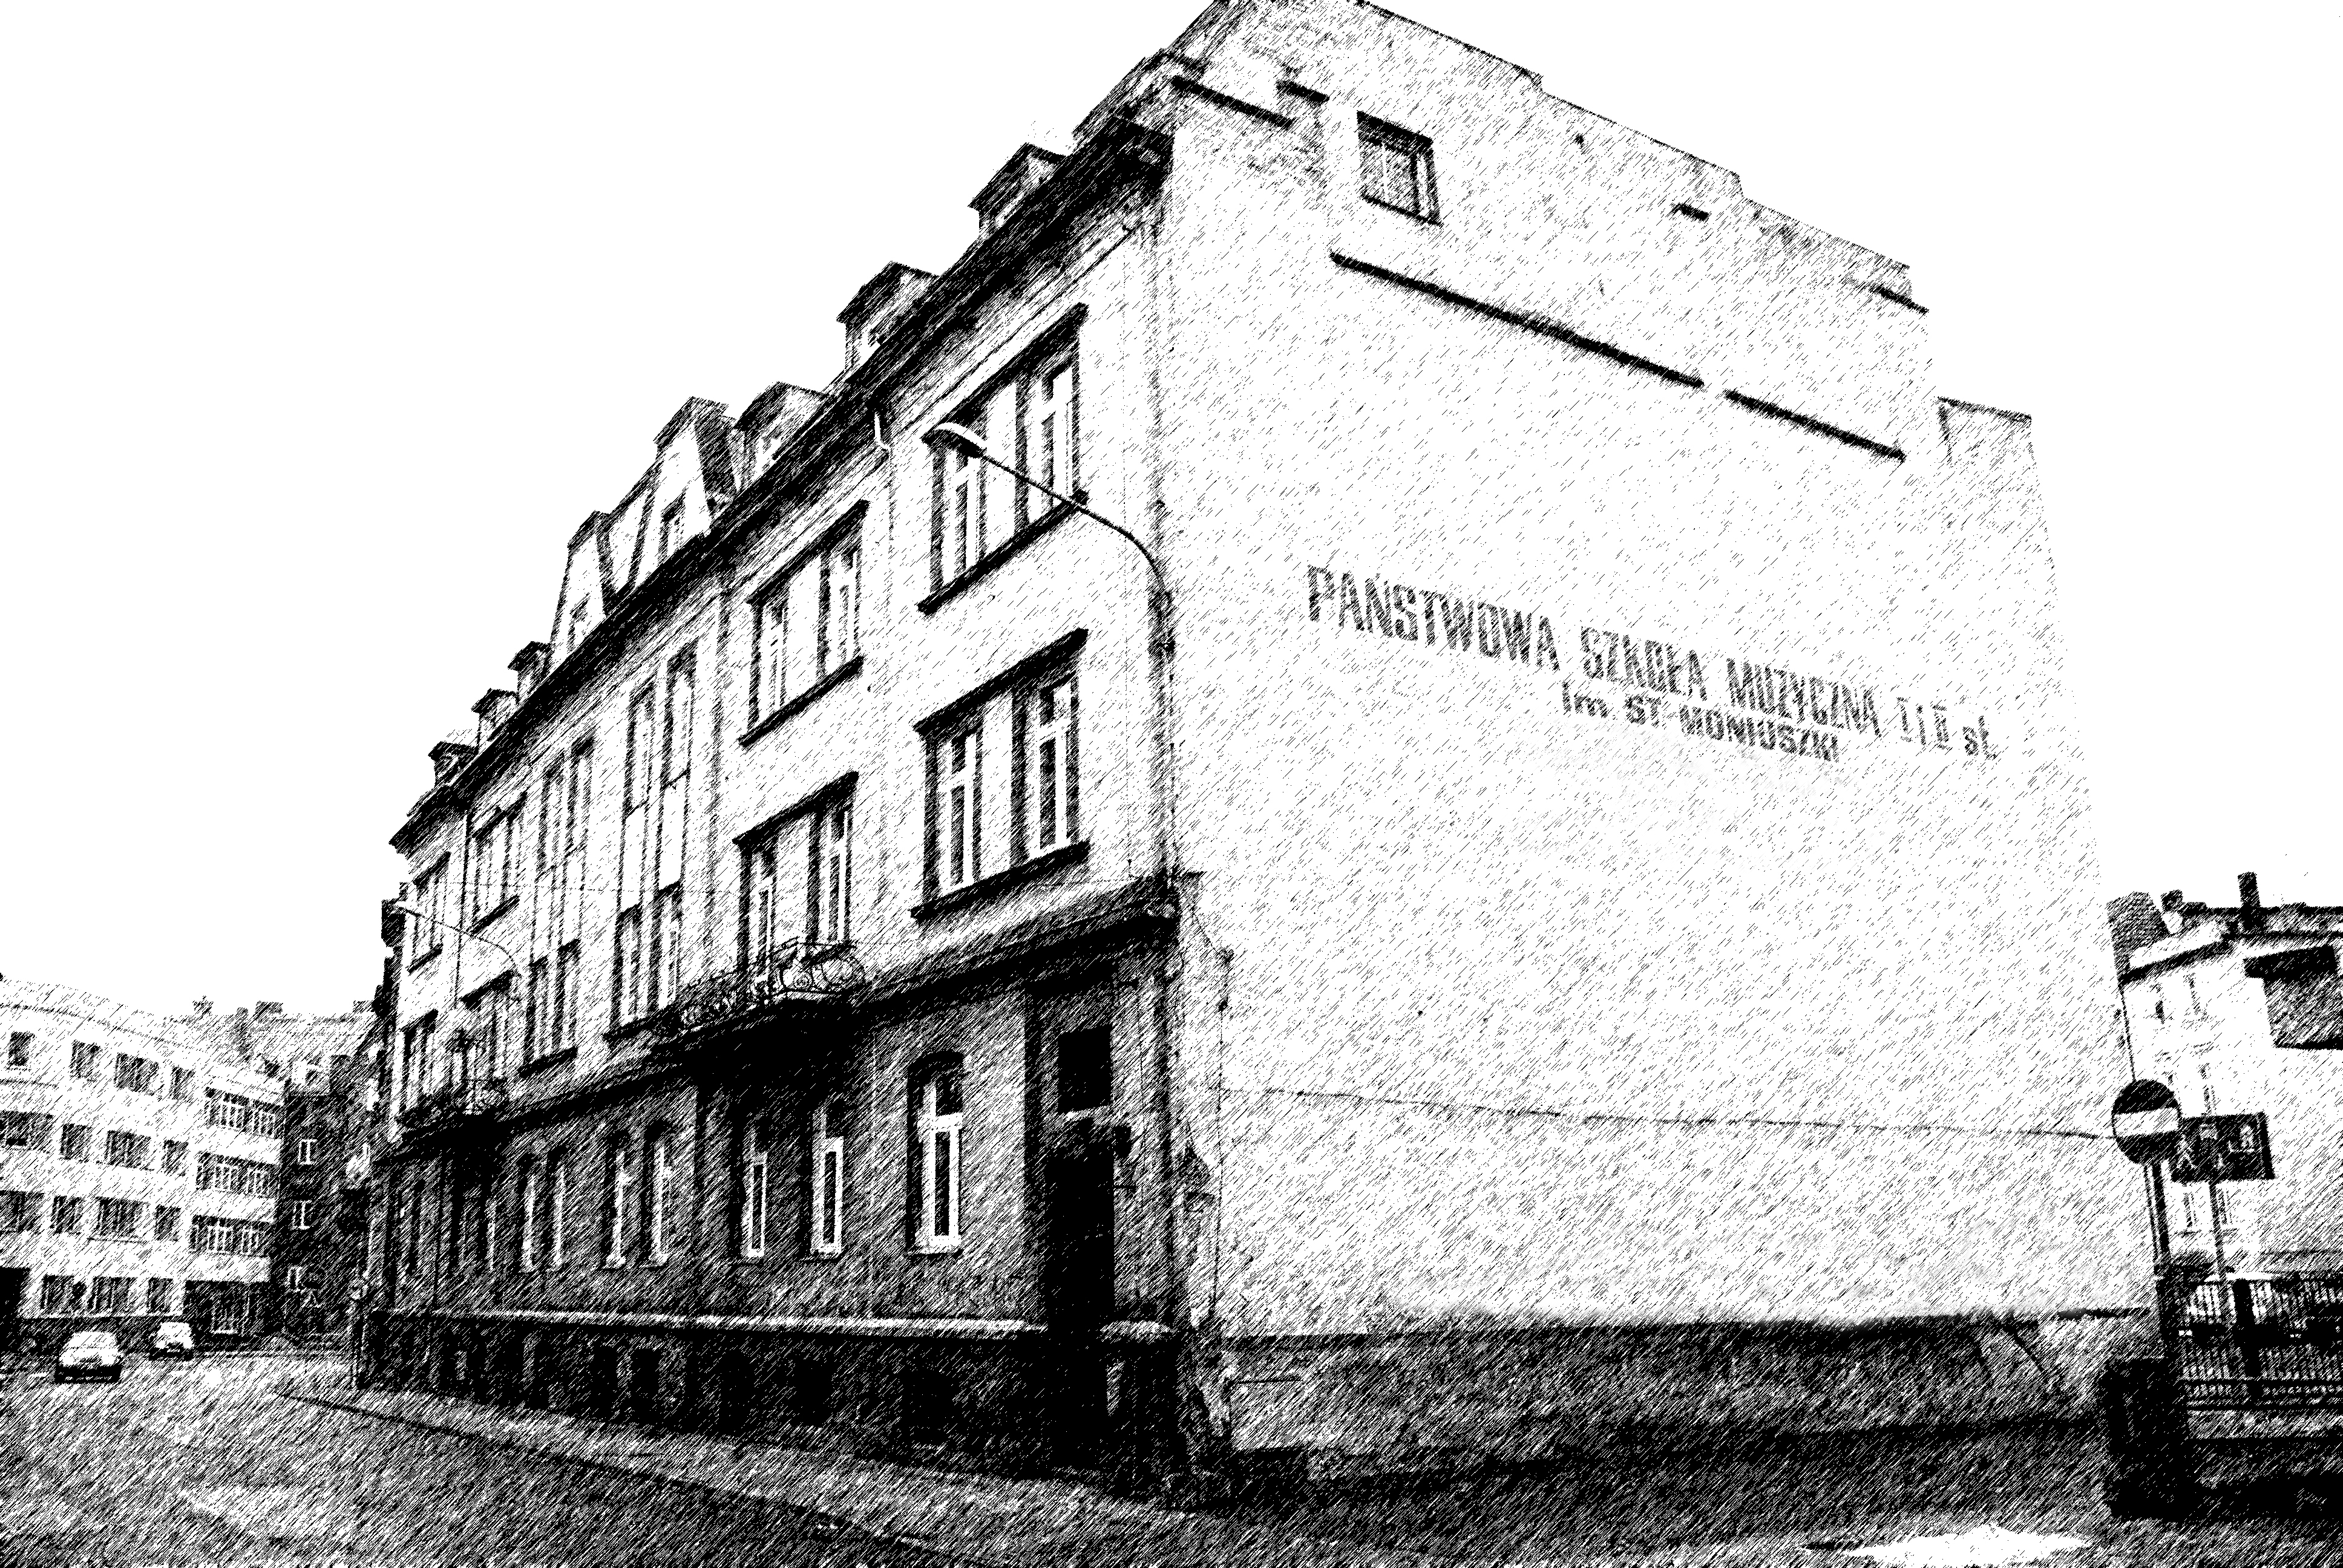 Zdjęcie czarno - białe, widoczna stara elewacja budynku szkoły muzycznej przy ulicy Piłsudskiego 26 z napisem wielkimi literami na bocznej stronie budynku: PAŃSTWOWA SZKOŁA MUZYCZNA I i II st. im. ST. MONIUSZKO